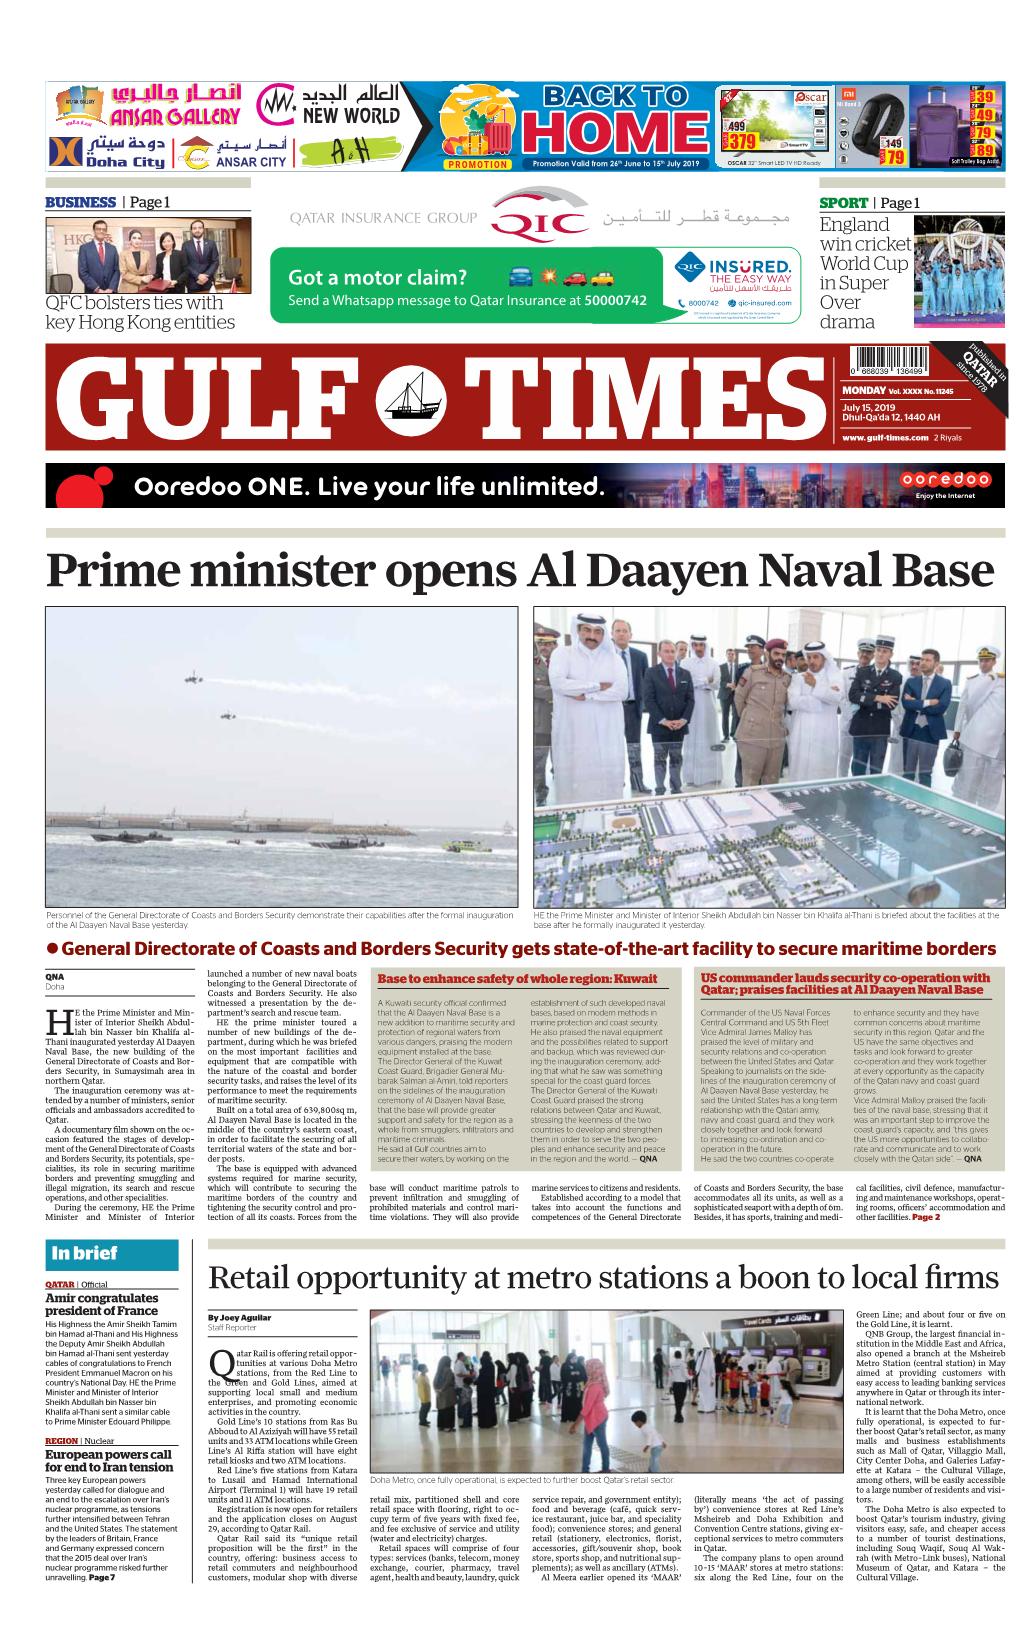 Prime Minister Opens Al Daayen Naval Base